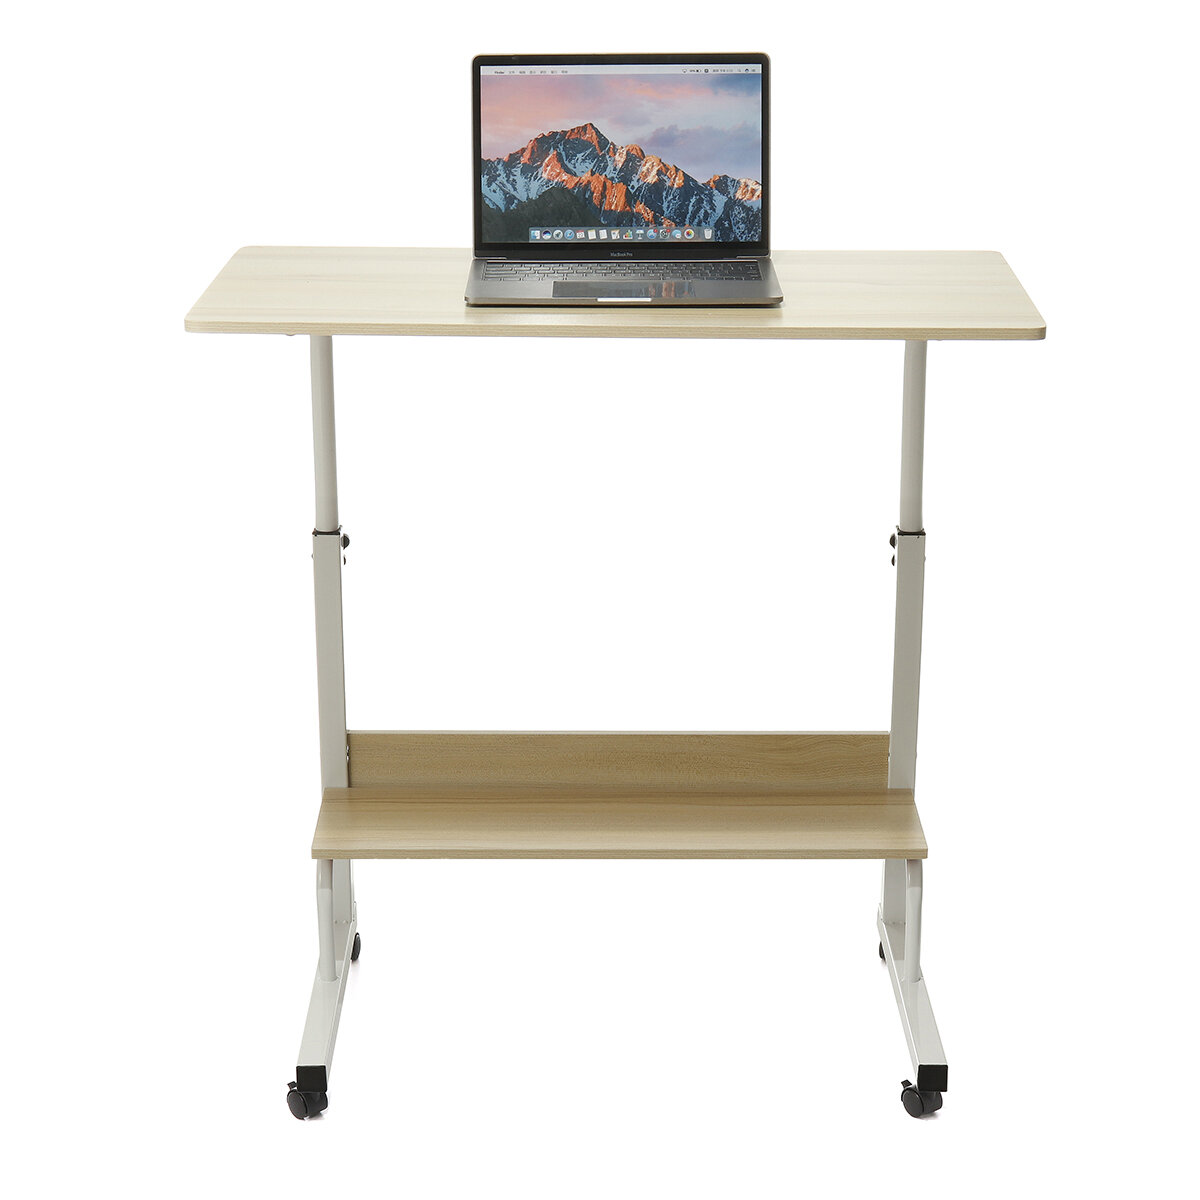 Image of Adjustable Laptop Desk Movable Bed Desk Writing Small Desk Lifting Desk Mobile Bedside Table for Home Dormitory